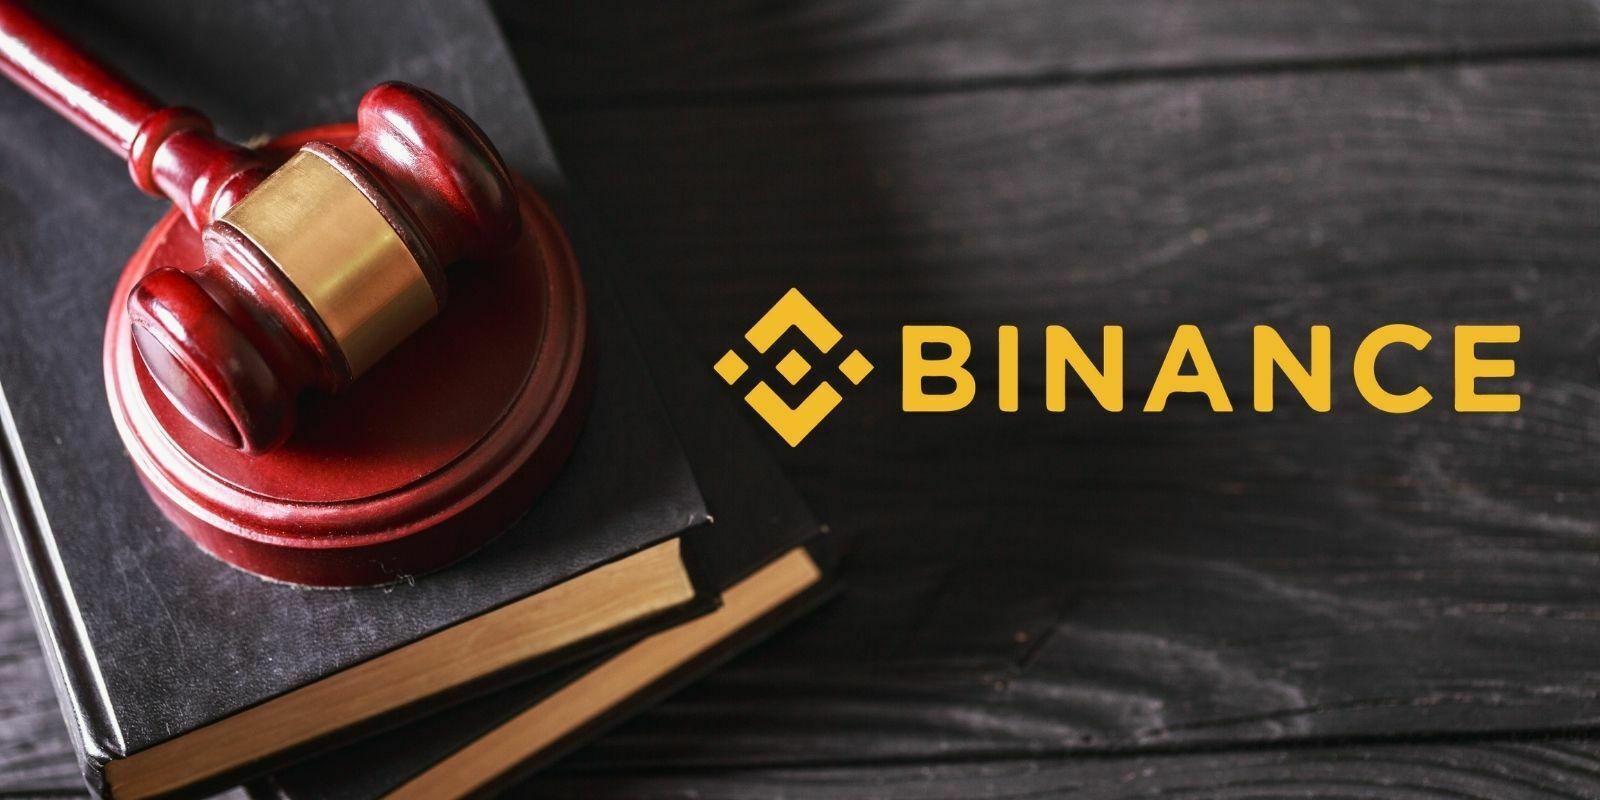 Binance est accusé d’avoir facilité le blanchiment de 9M$ en Bitcoin (BTC)